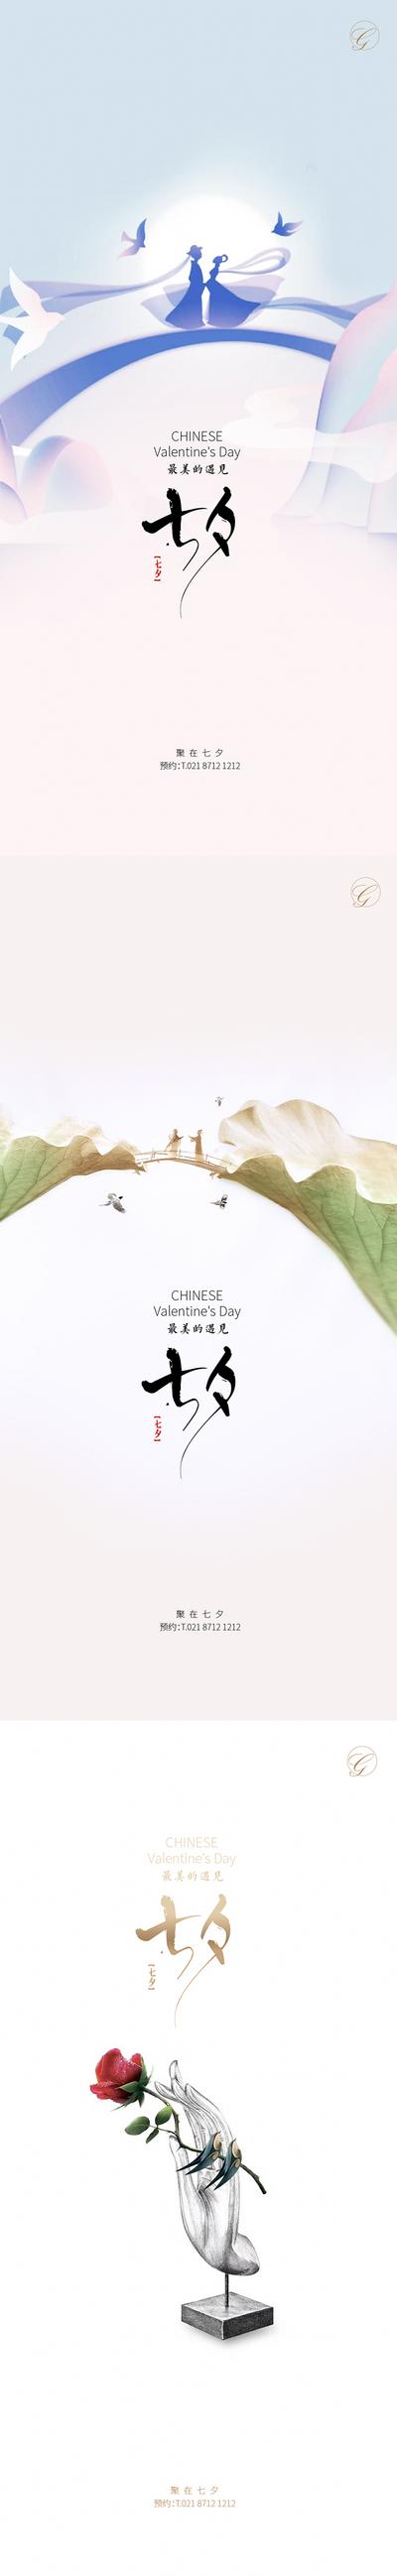 【南门网】海报 中国传统节日 七夕 情人节 喜鹊 玫瑰花 系列